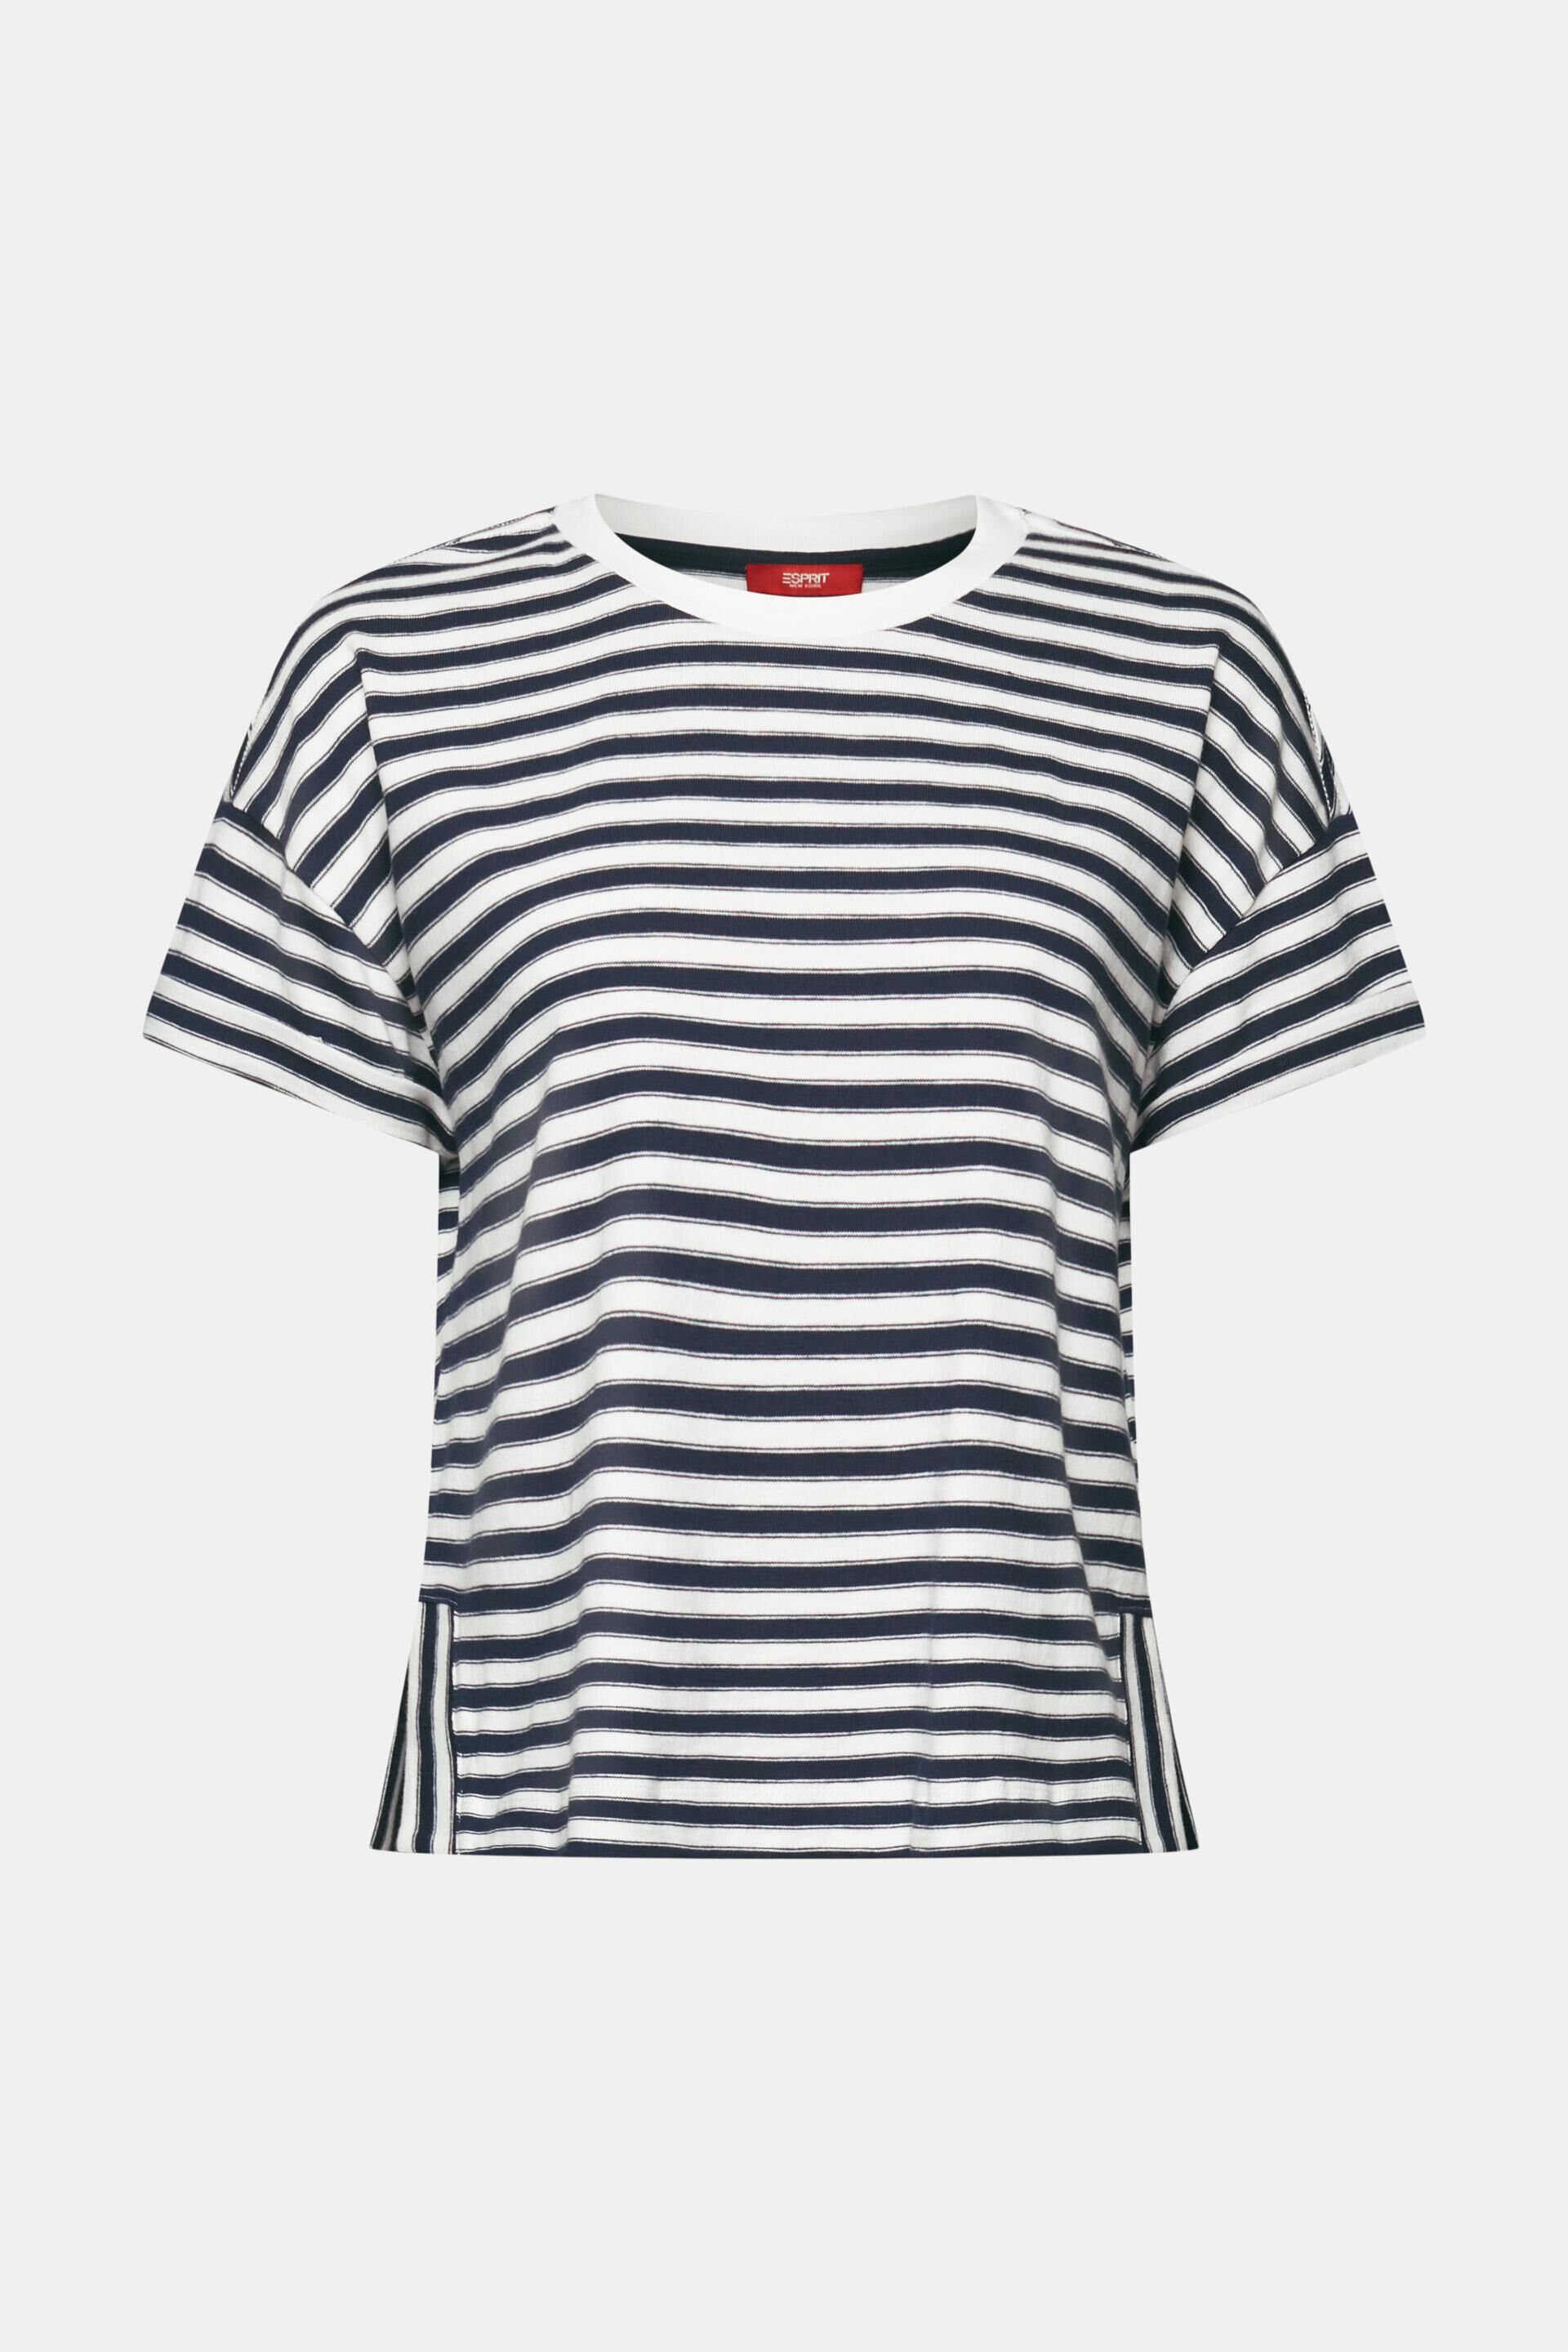 Esprit Gestreiftes Baumwolle T-Shirt, % 100